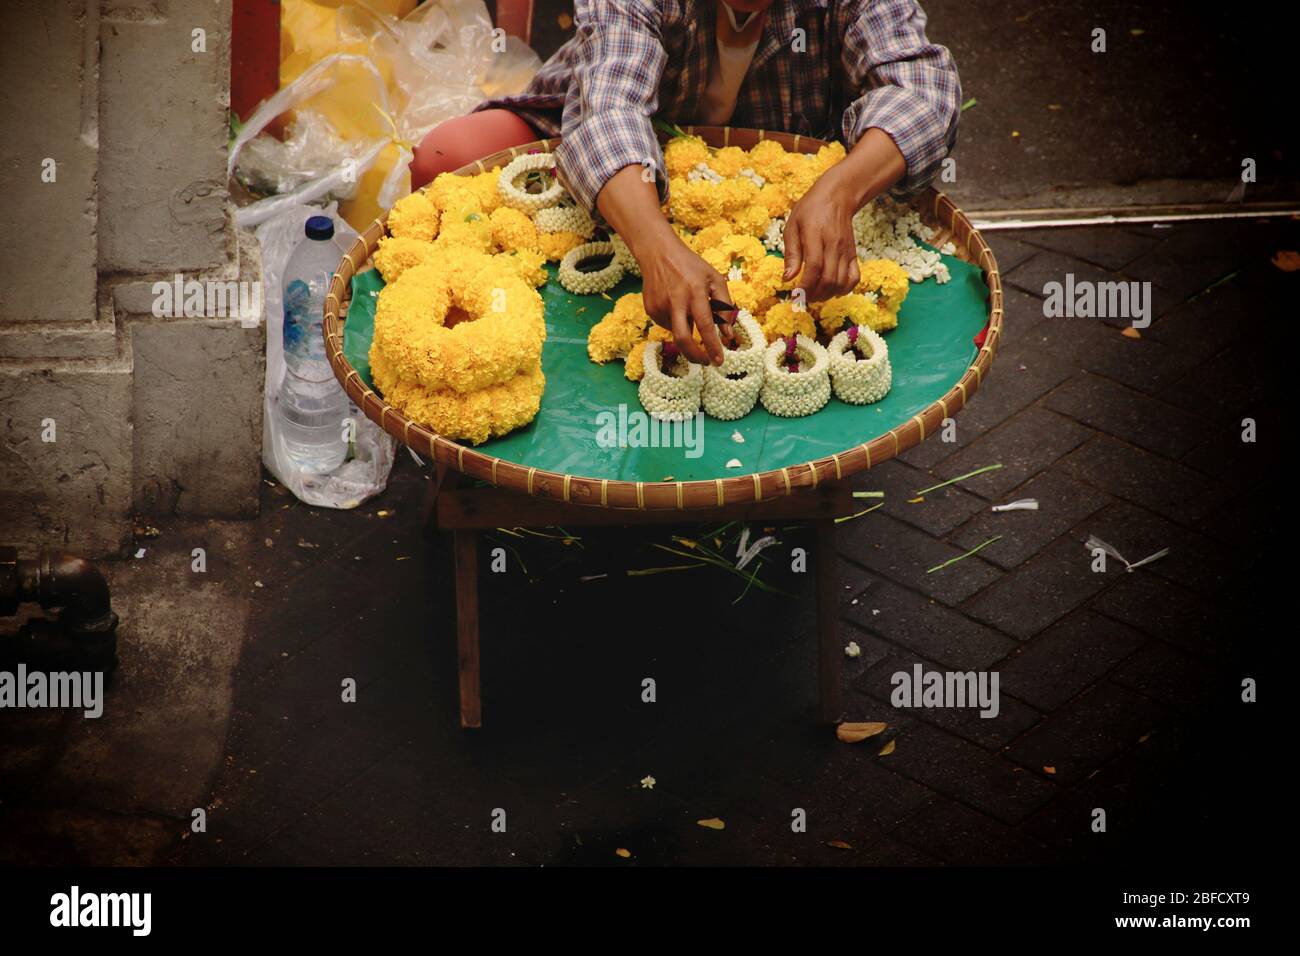 Thailändischer Straßenverkäufer, der Phuang malai oder malai verkauft, eine Blumengirlande, die für buddhistische Opfergaben und Glücksbringer in der thailändischen Kultur verwendet wird Stockfoto